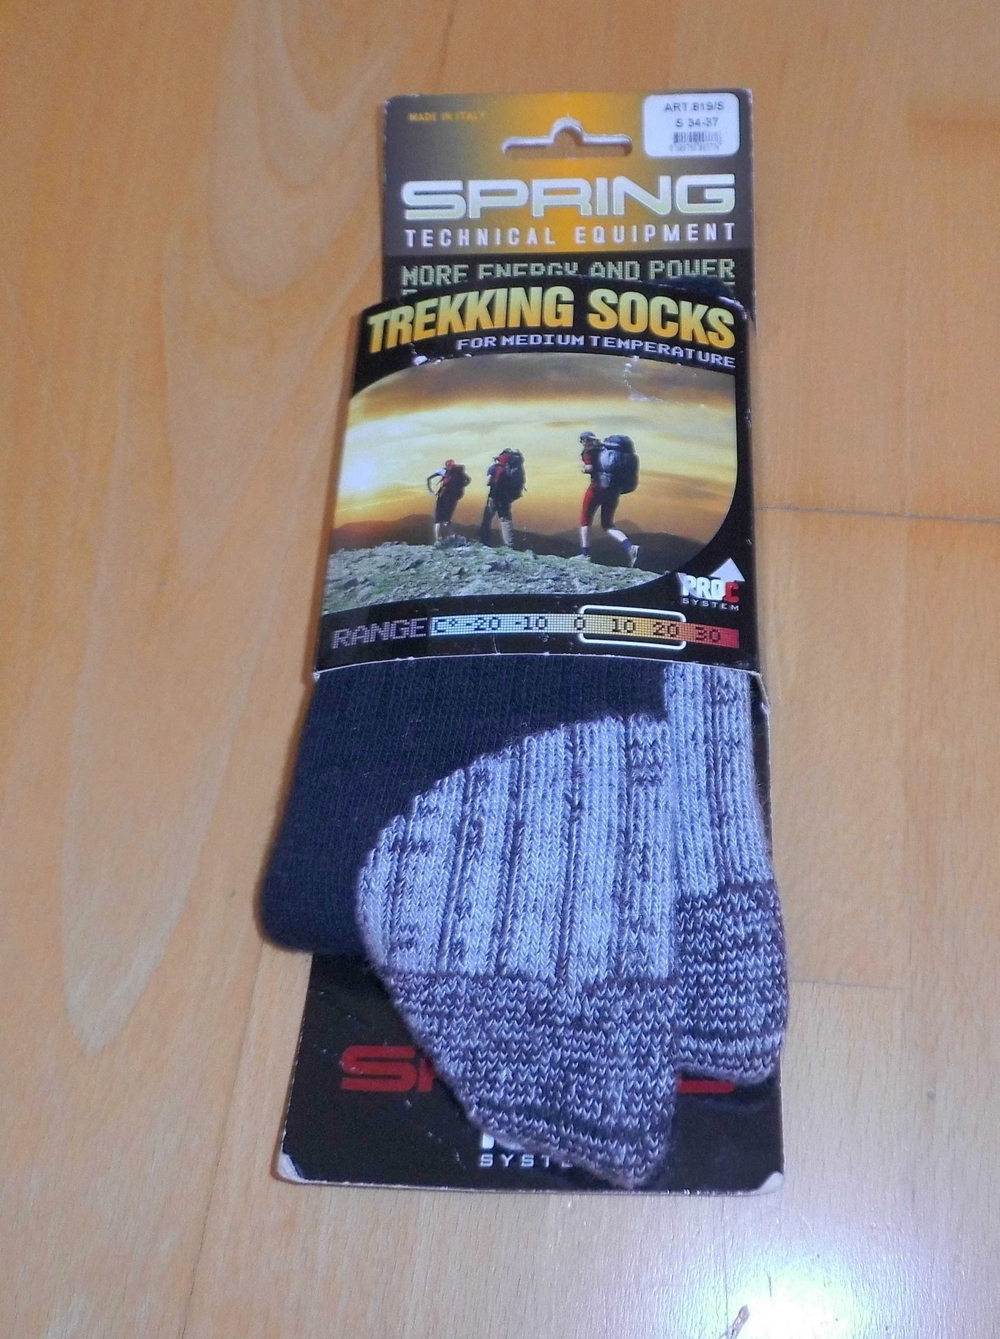 NEU Trekking Socken Größe 34 bis 37 Technical Equipment